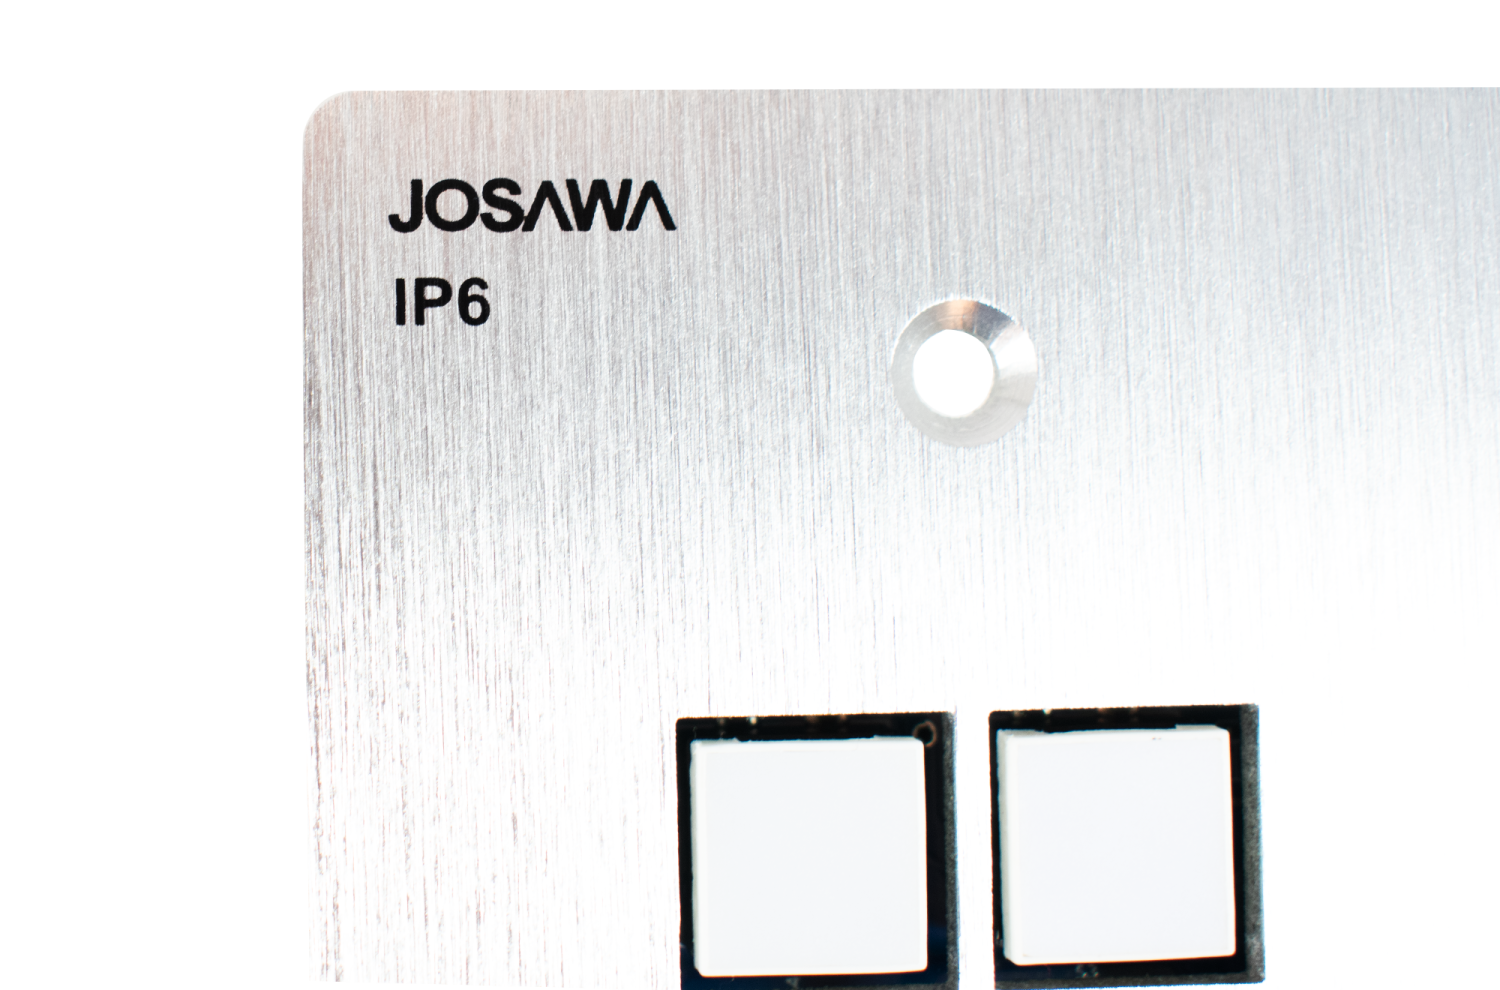 Josawa IP6